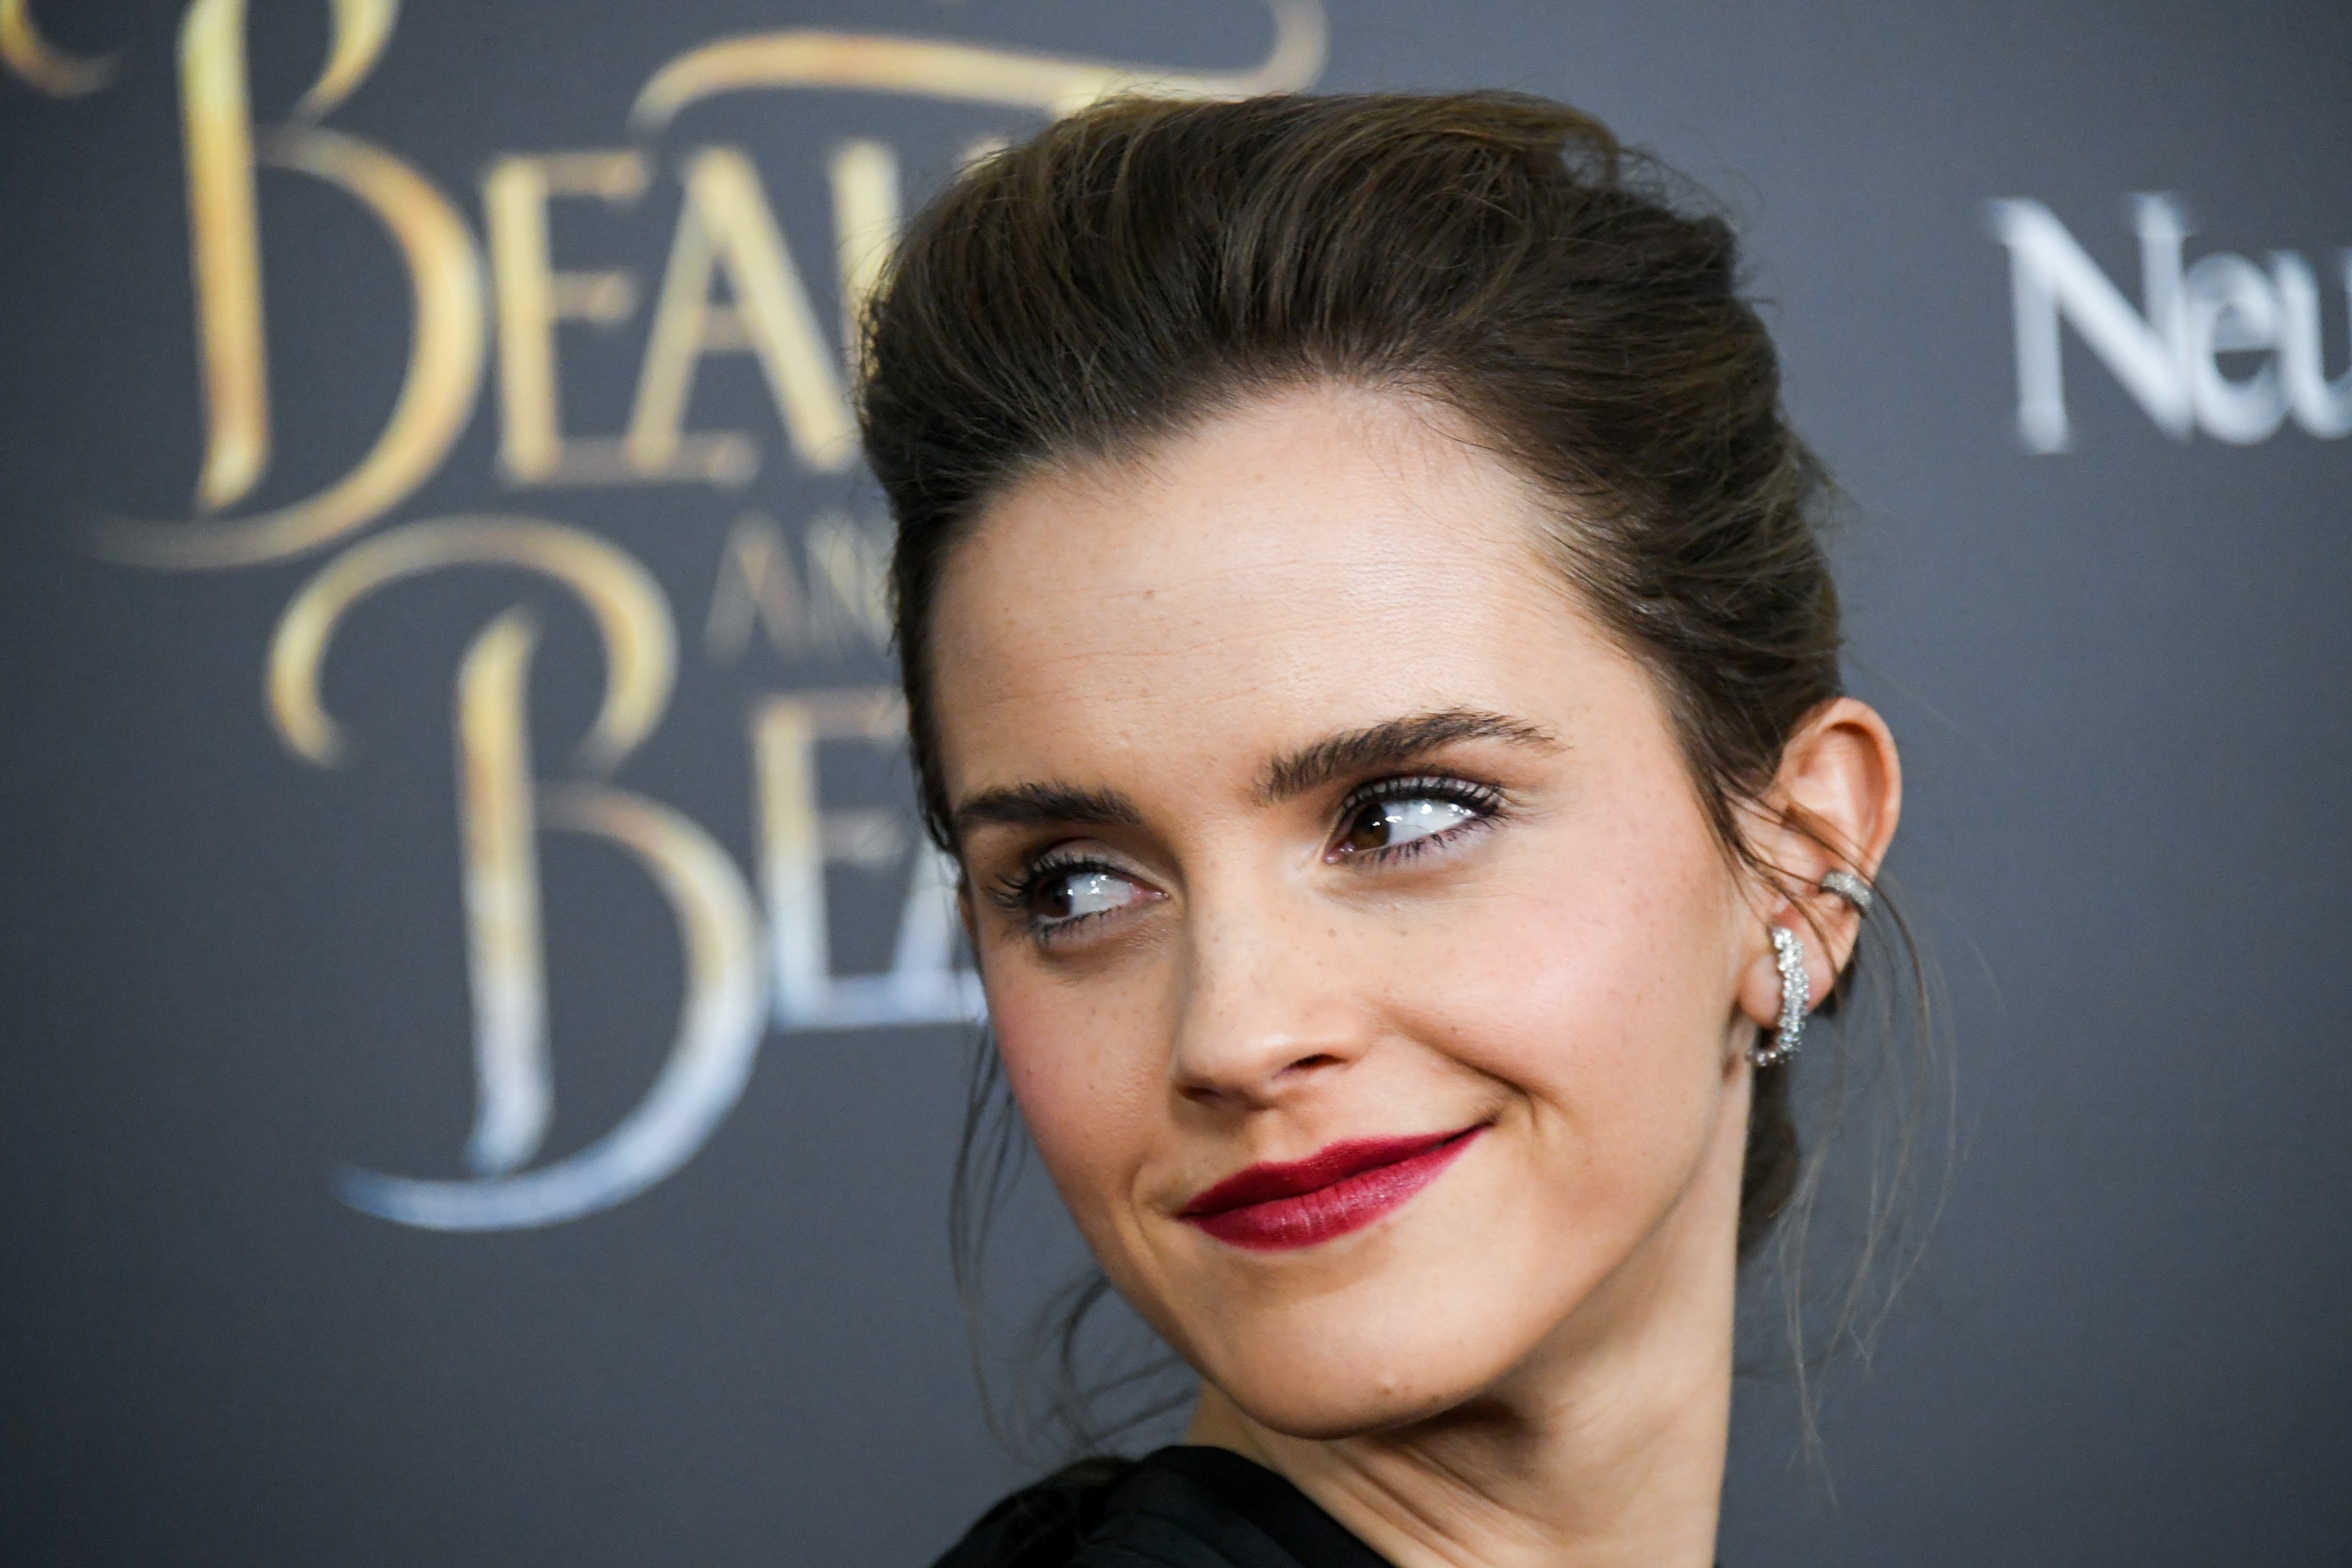 Emma Watson Porn Caption Teacher - Emma Watson, Amanda Seyfried threaten suits over leaked photos